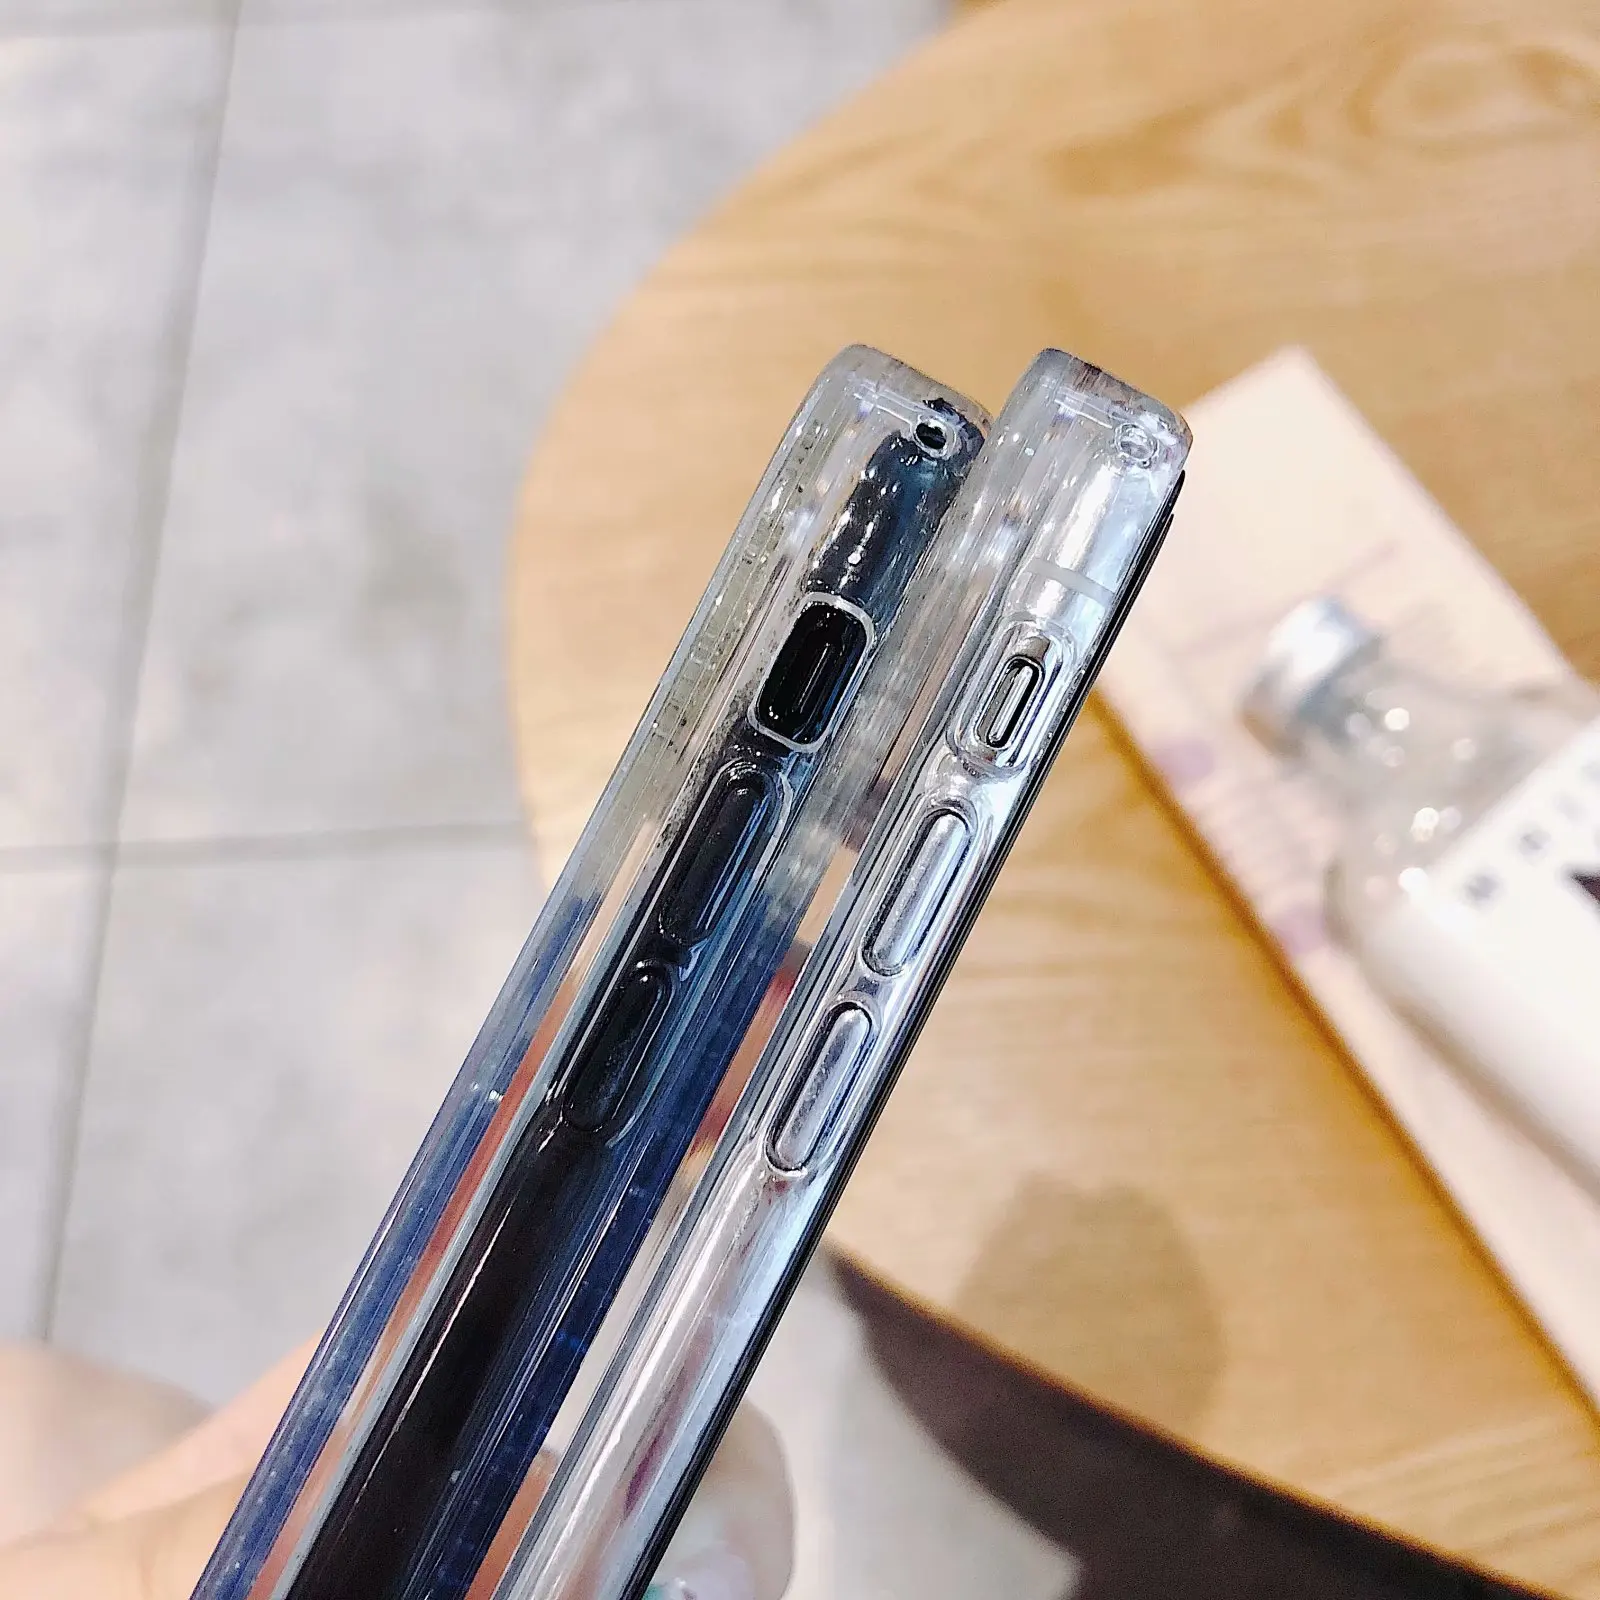 Жидкость со стразами и сверкающим узором сыпучего песка силиконовый чехол для samsung Galaxy Note 8 9 10 Pro S8 S9 плюс S7 край A10 A20 A40 A60 A70 M10 воды крышка